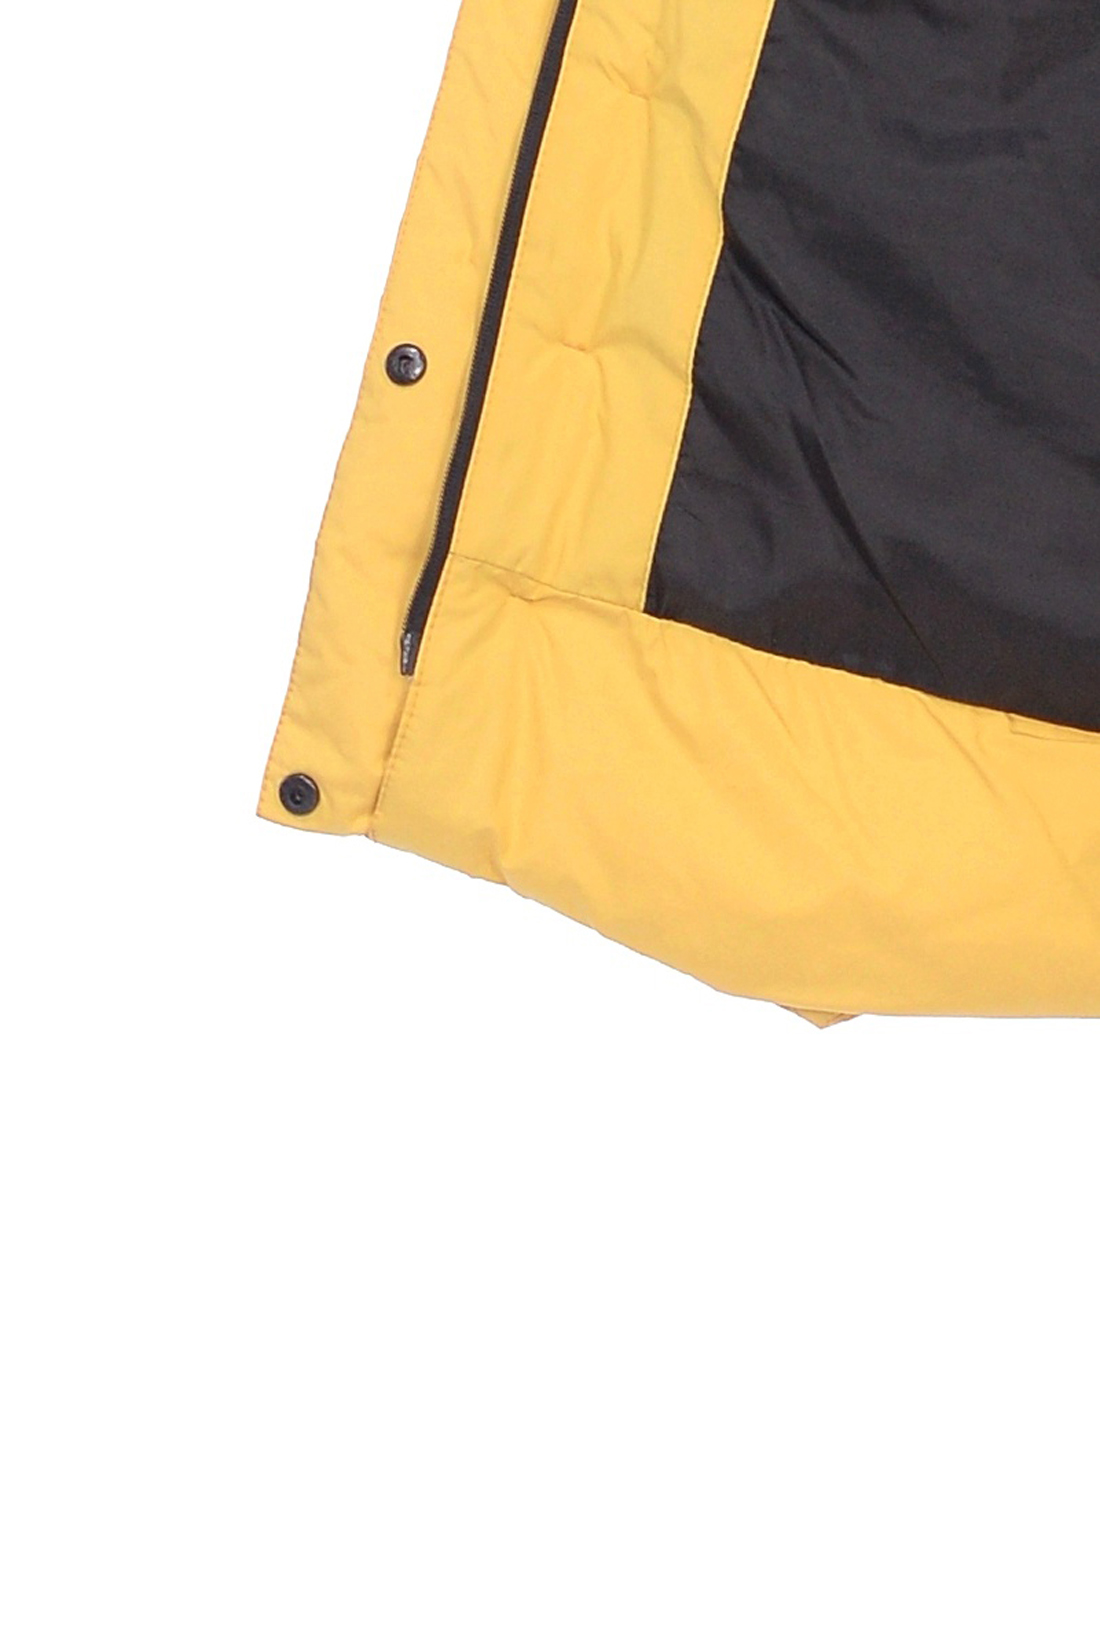 Куртка с фигурной прострочкой (арт. baon B038588), размер M, цвет желтый Куртка с фигурной прострочкой (арт. baon B038588) - фото 3